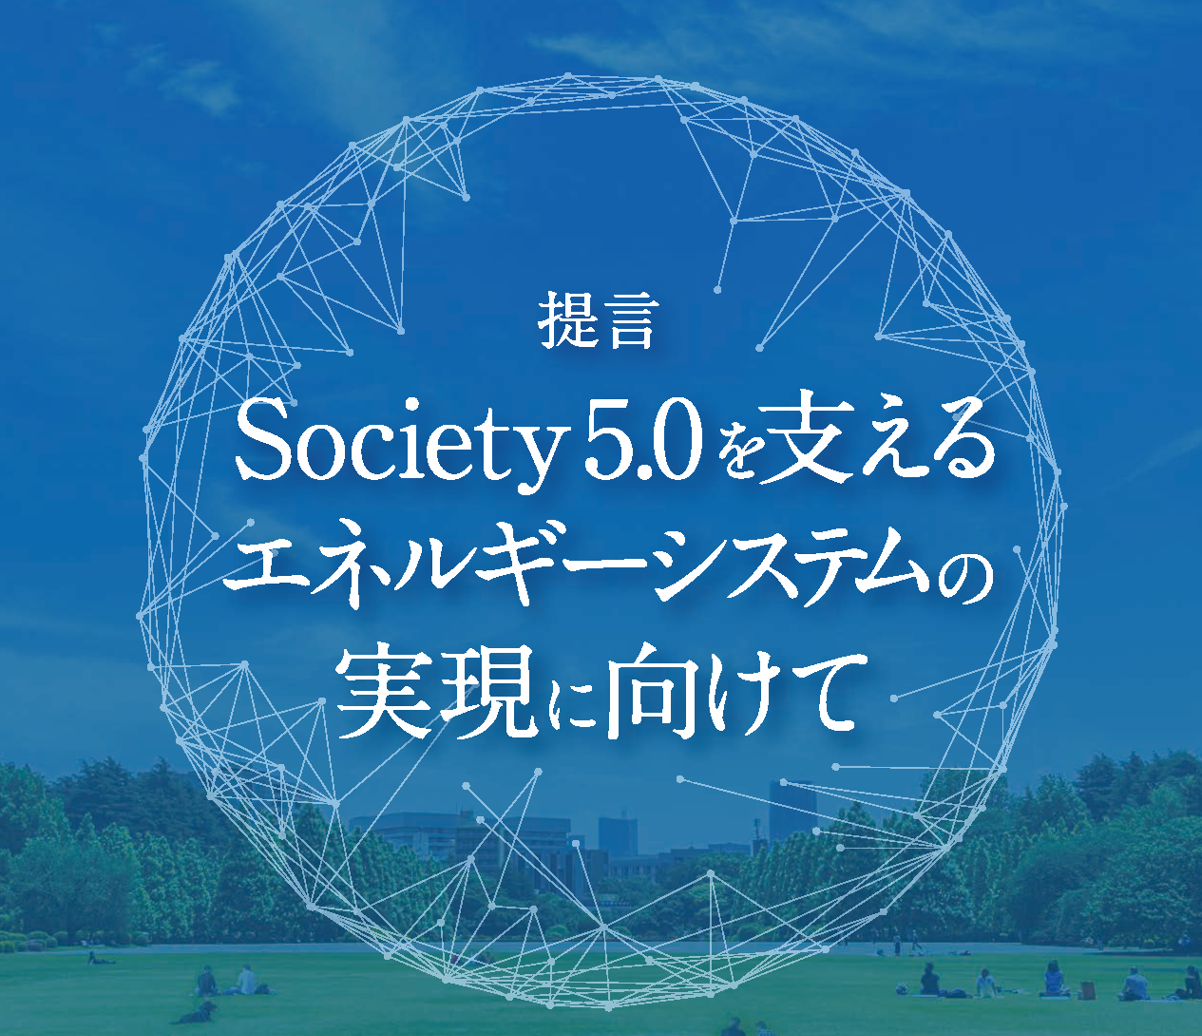 提言書「Society 5.0を支えるエネルギーシステムの実現に向けて」（第5版）を公開しました。